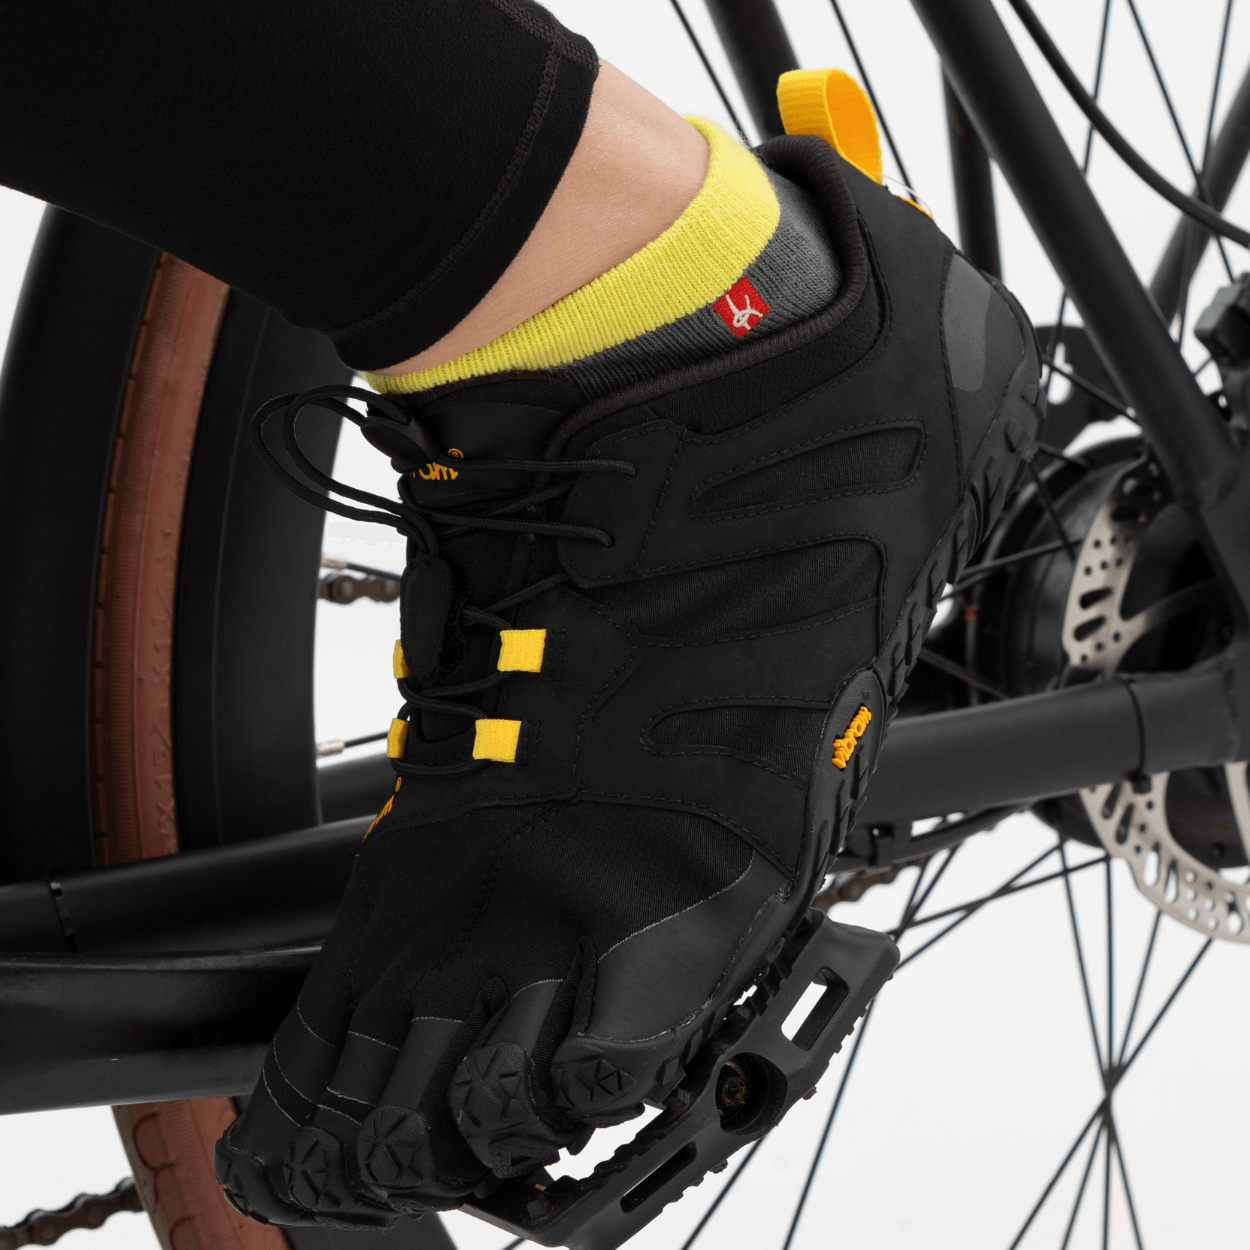 Lightweight chaussettes à orteils pour le sport et les loisirs, idéal pour le cyclisme